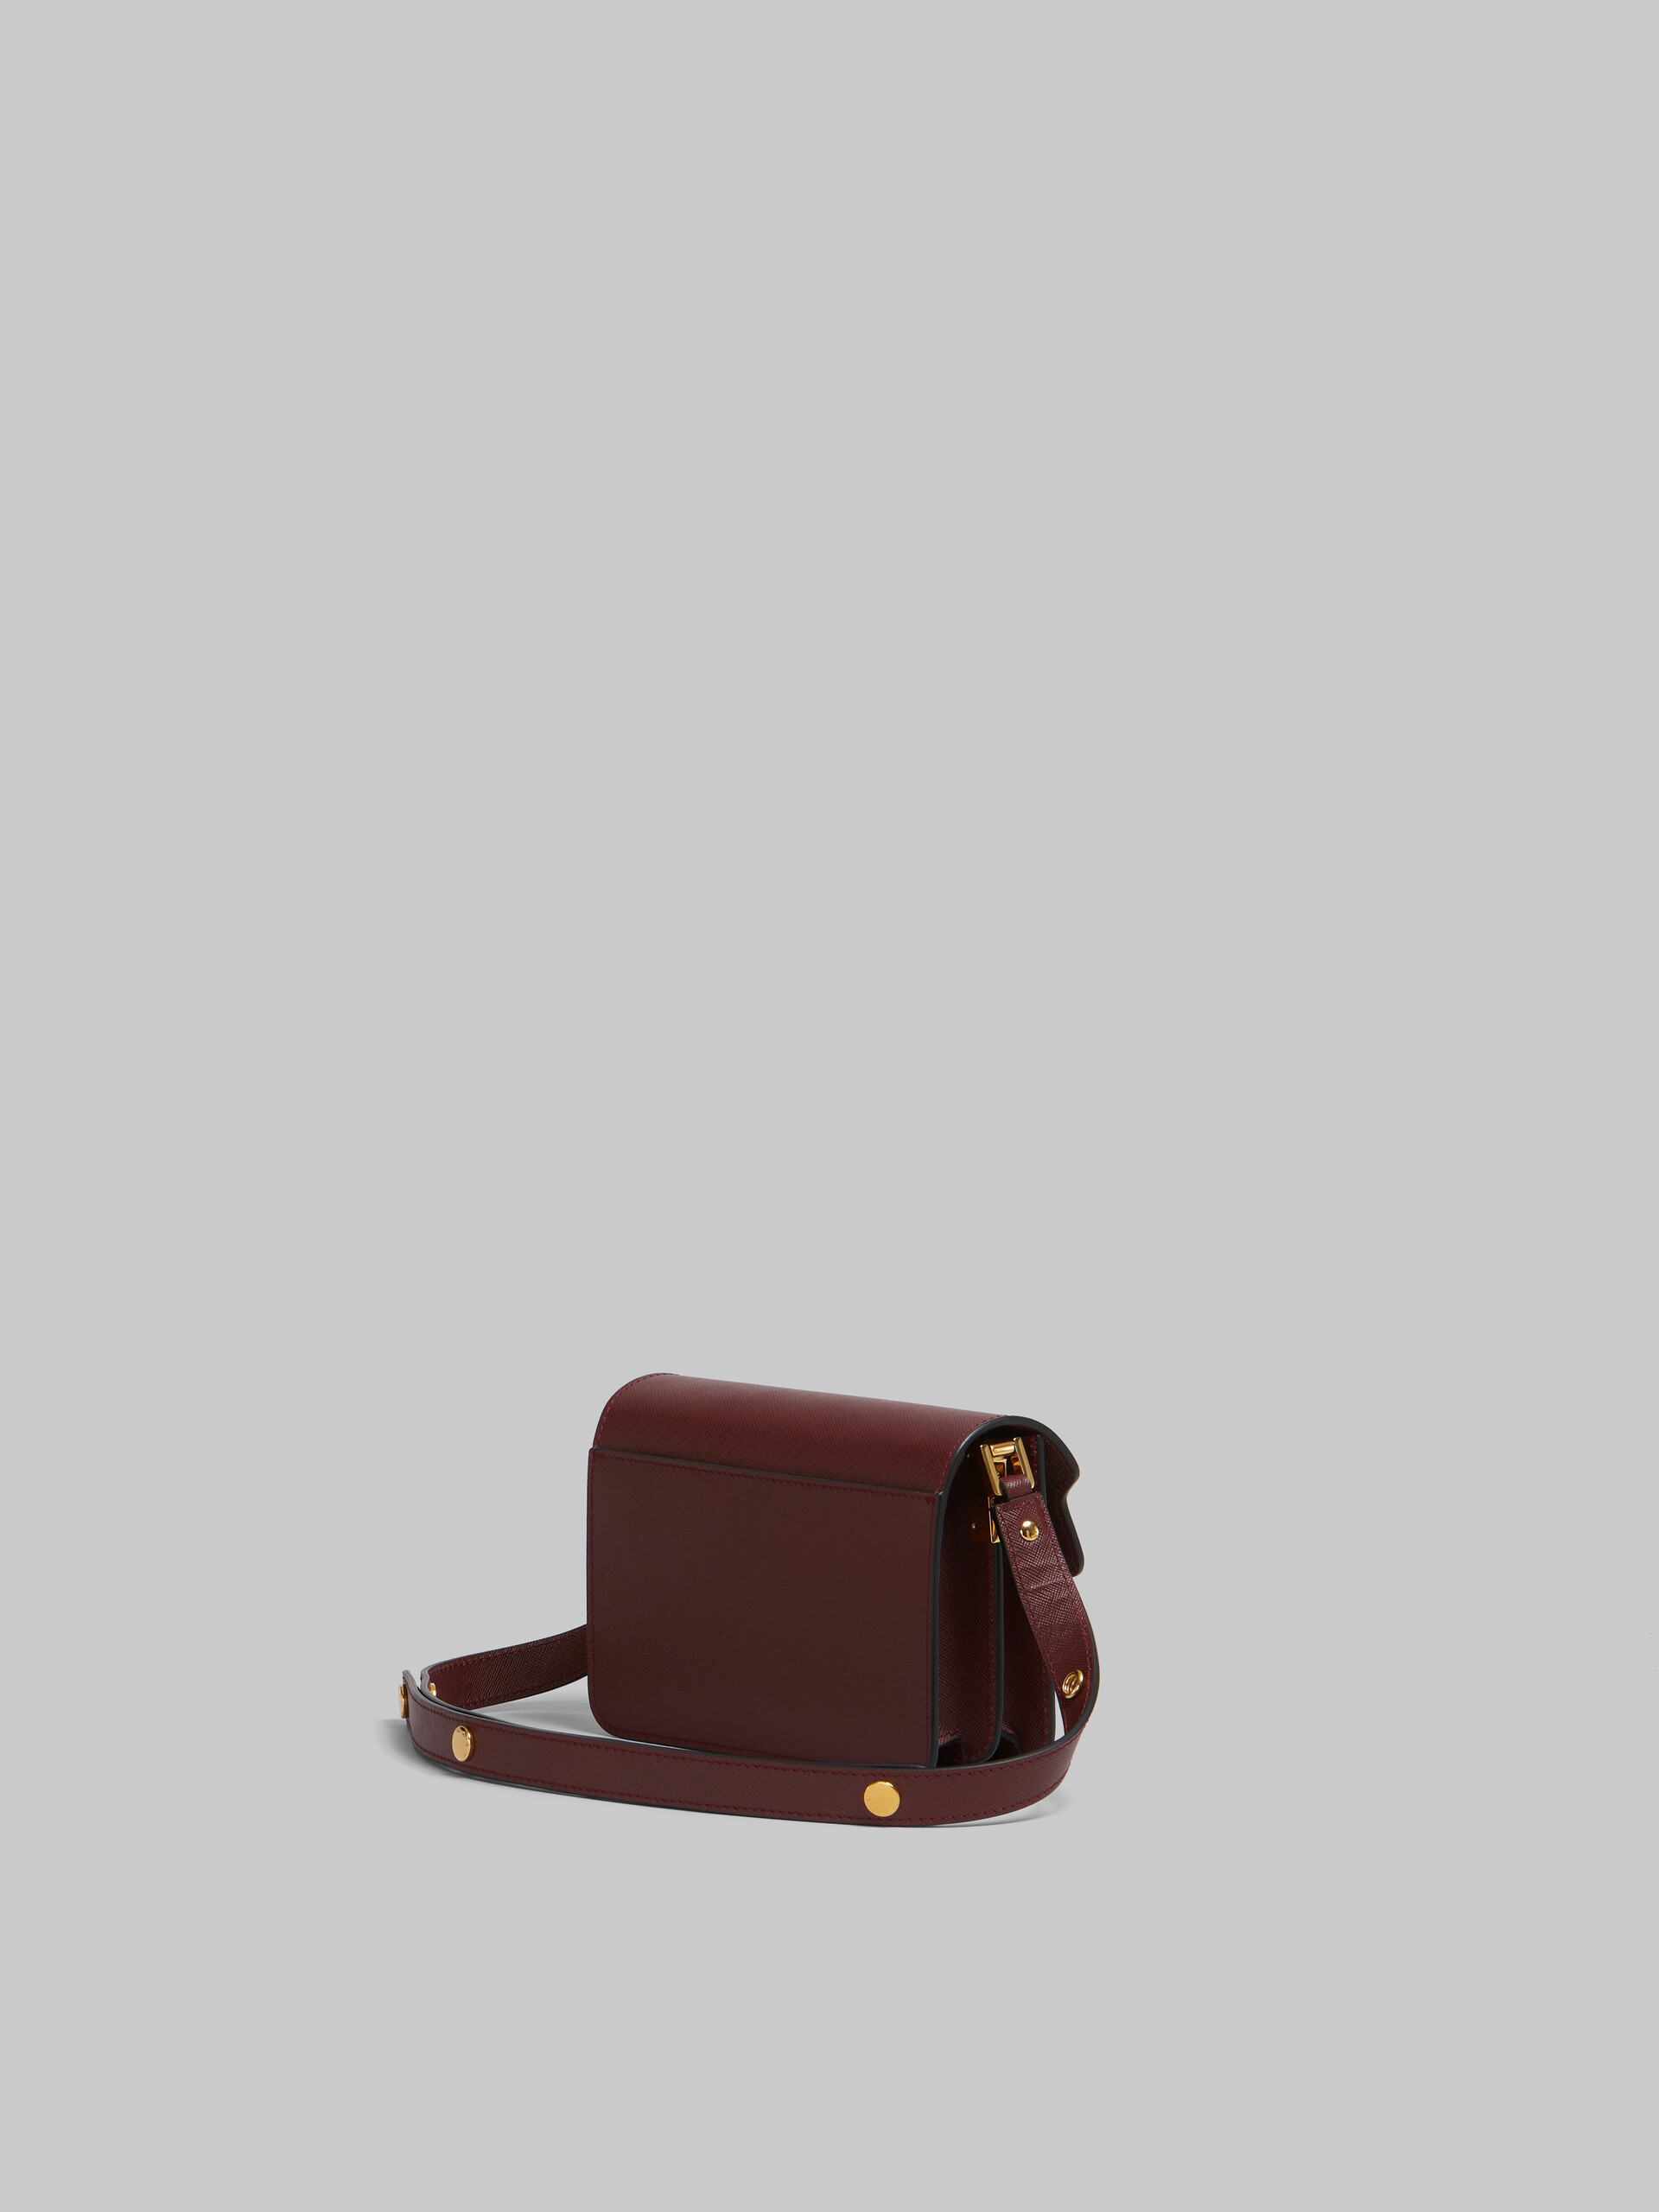 Trunk  Bag Mini in pelle saffiano marrone - Borse a spalla - Image 3